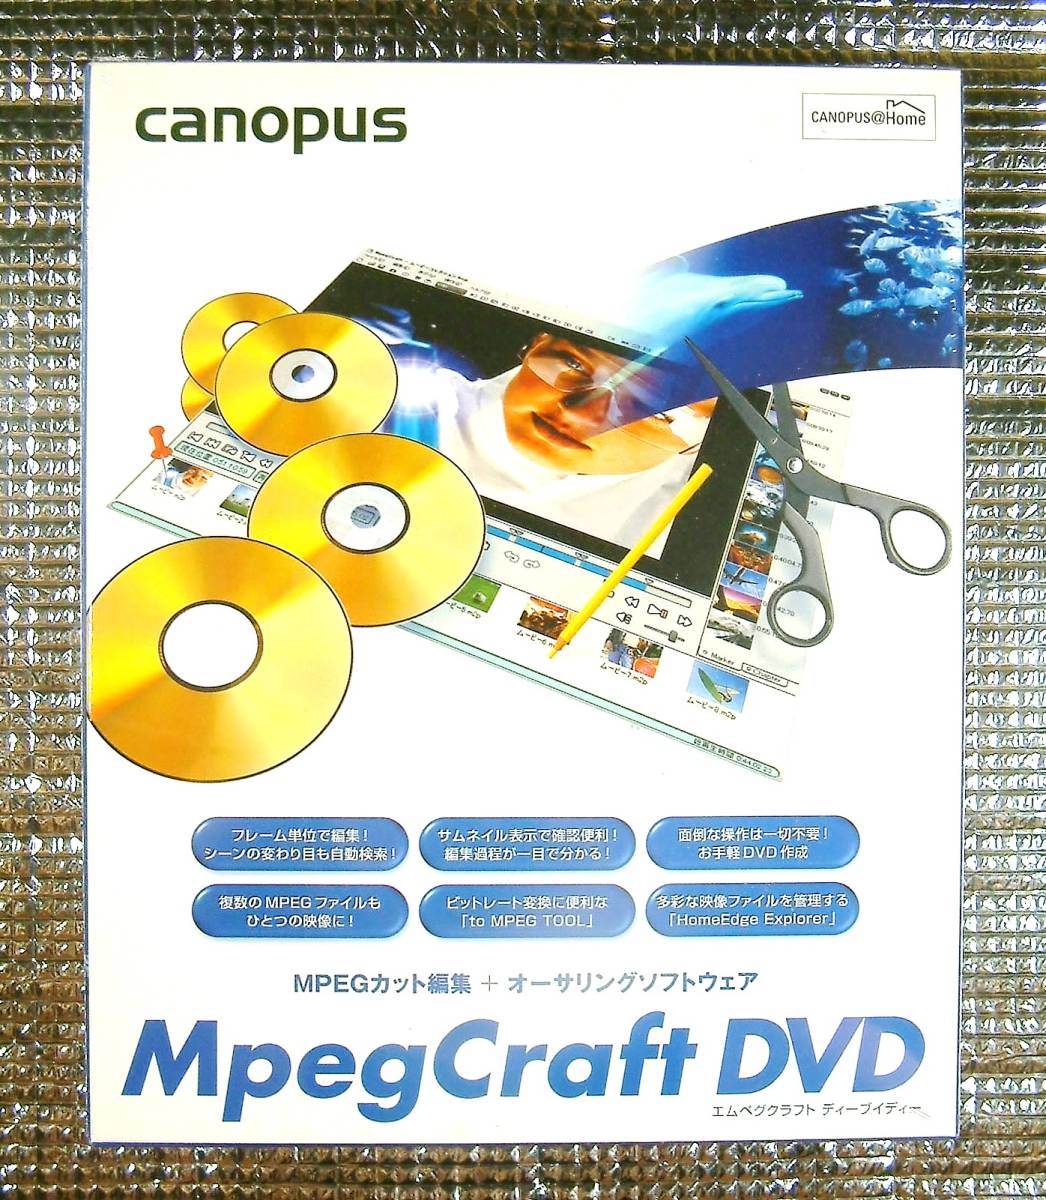 【3541】カノプス MpegCraft DVD 新品 canopus エムペグ ディーブイディー 未開封 カット編集オーサリング to MPEG TOOL HomeEdge Explorer